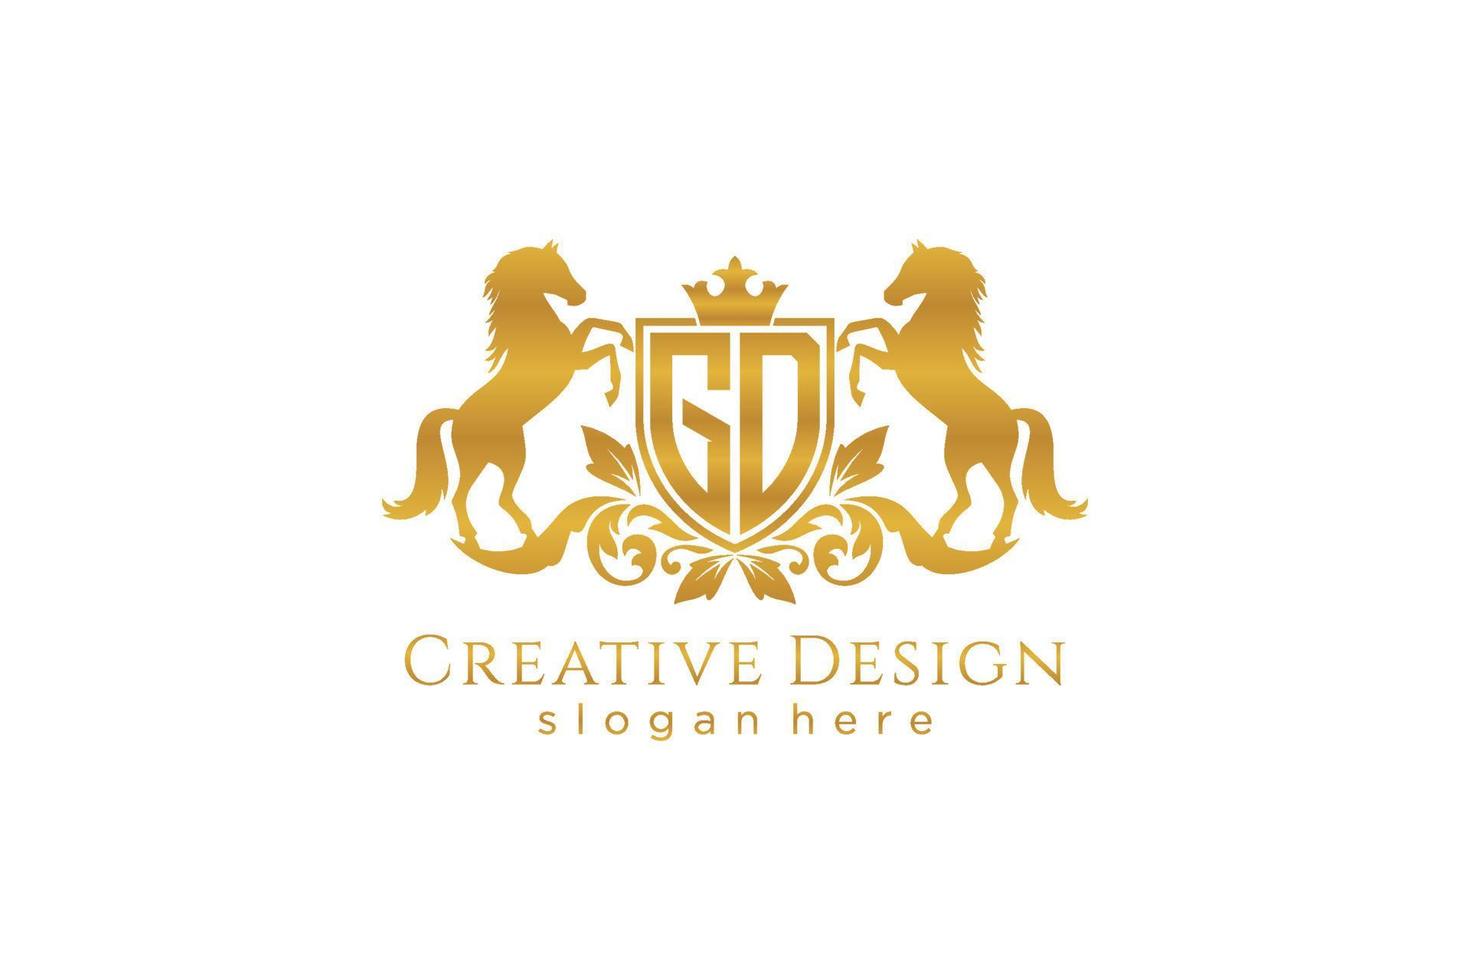 crista dourada retrô inicial gd com escudo e dois cavalos, modelo de crachá com pergaminhos e coroa real - perfeito para projetos de marca luxuosos vetor